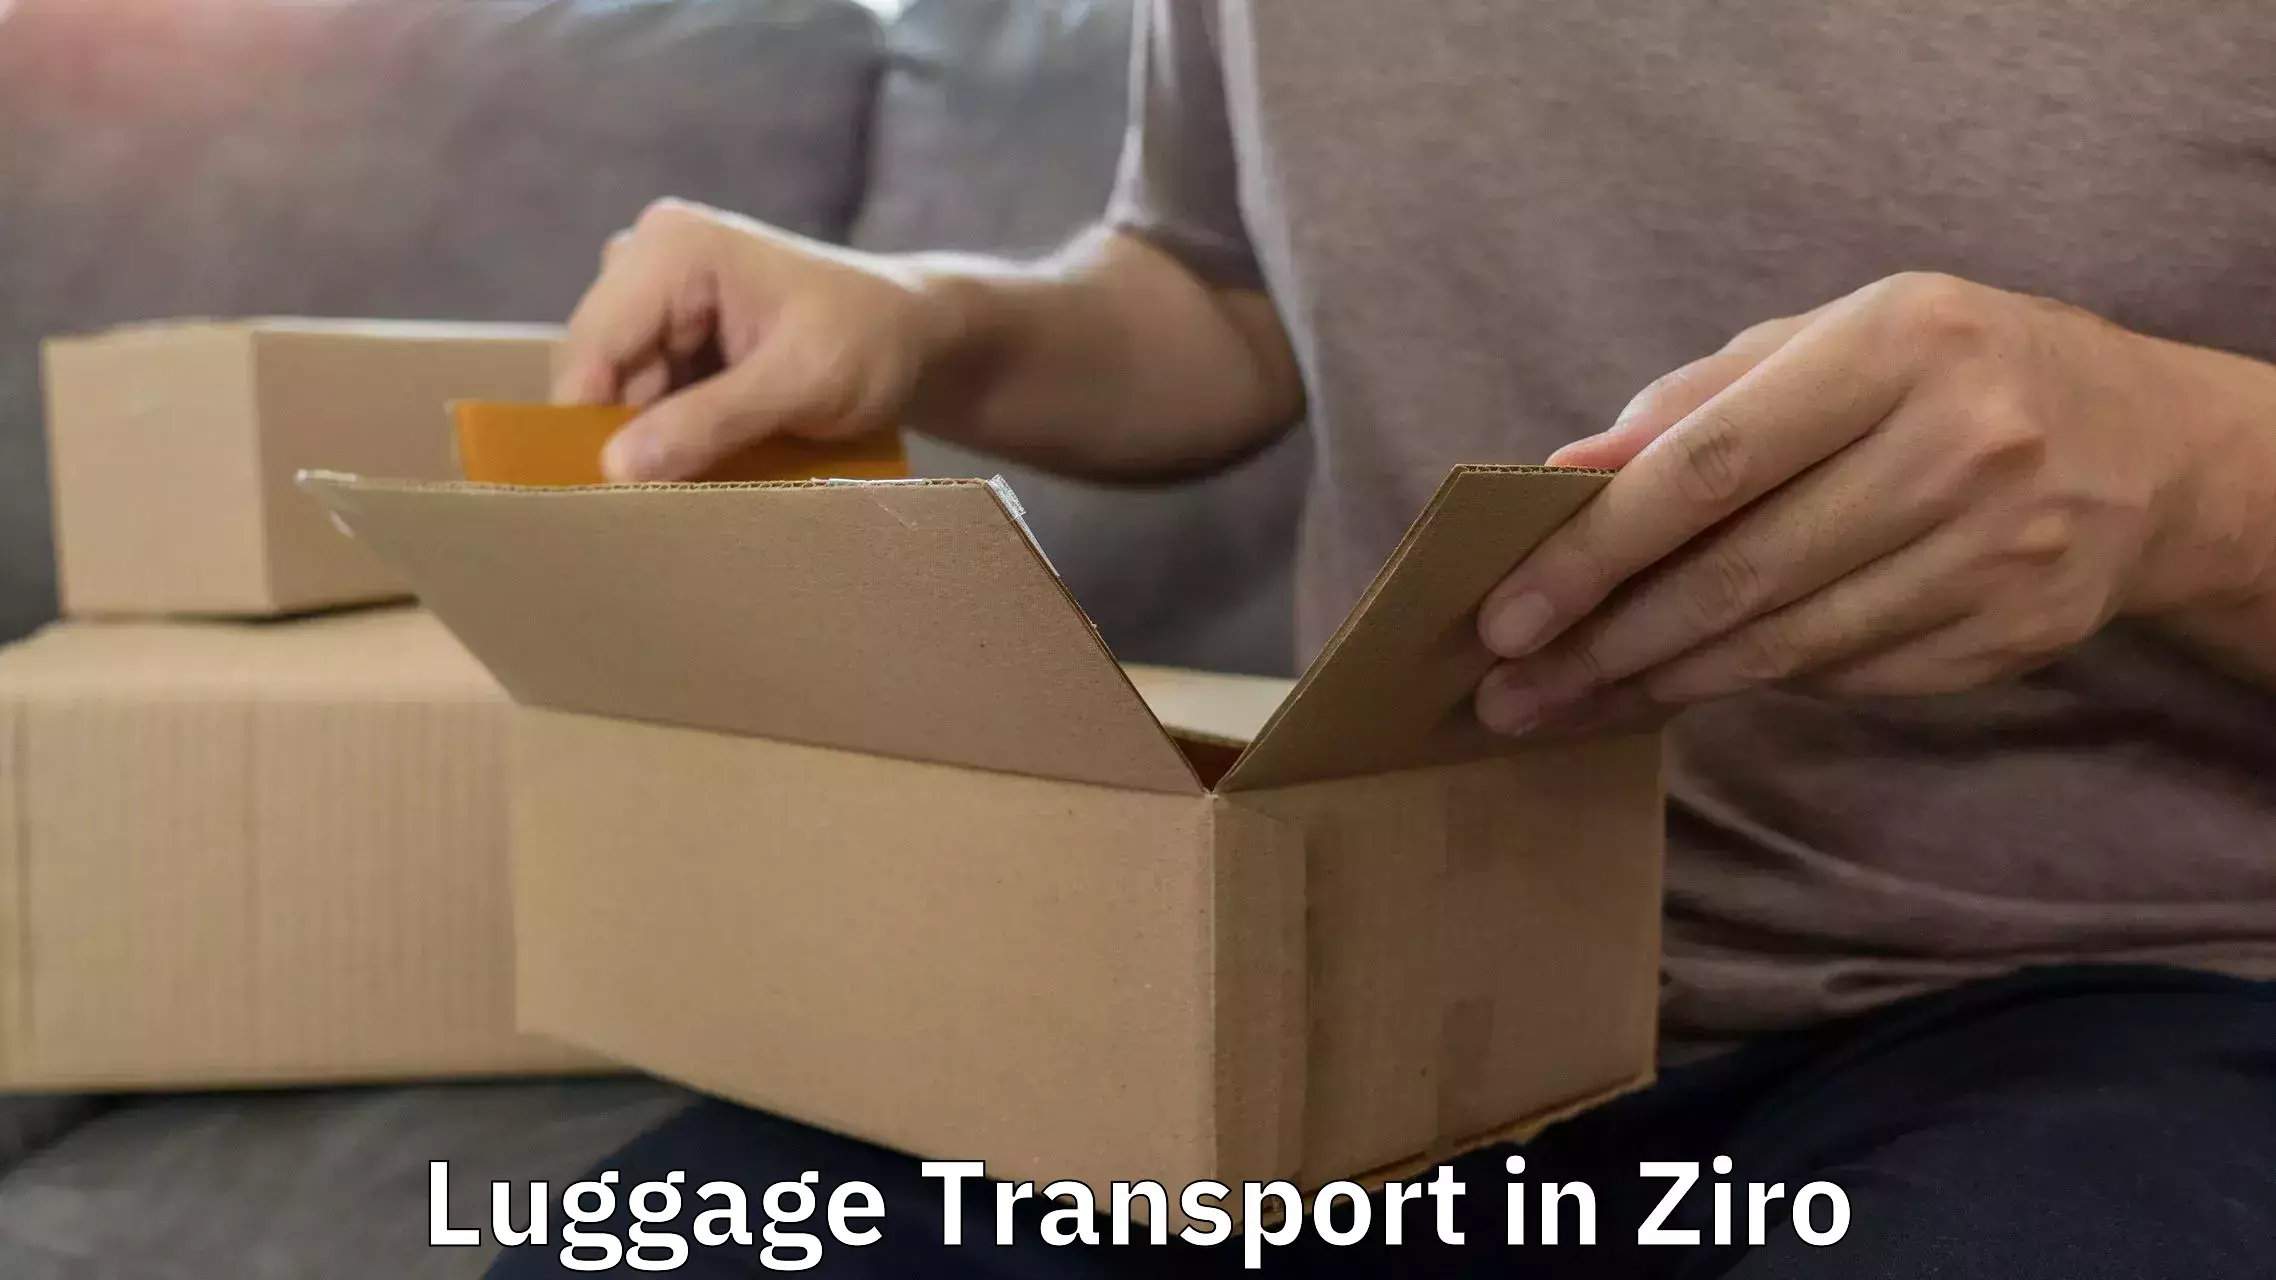 Baggage transport updates in Ziro